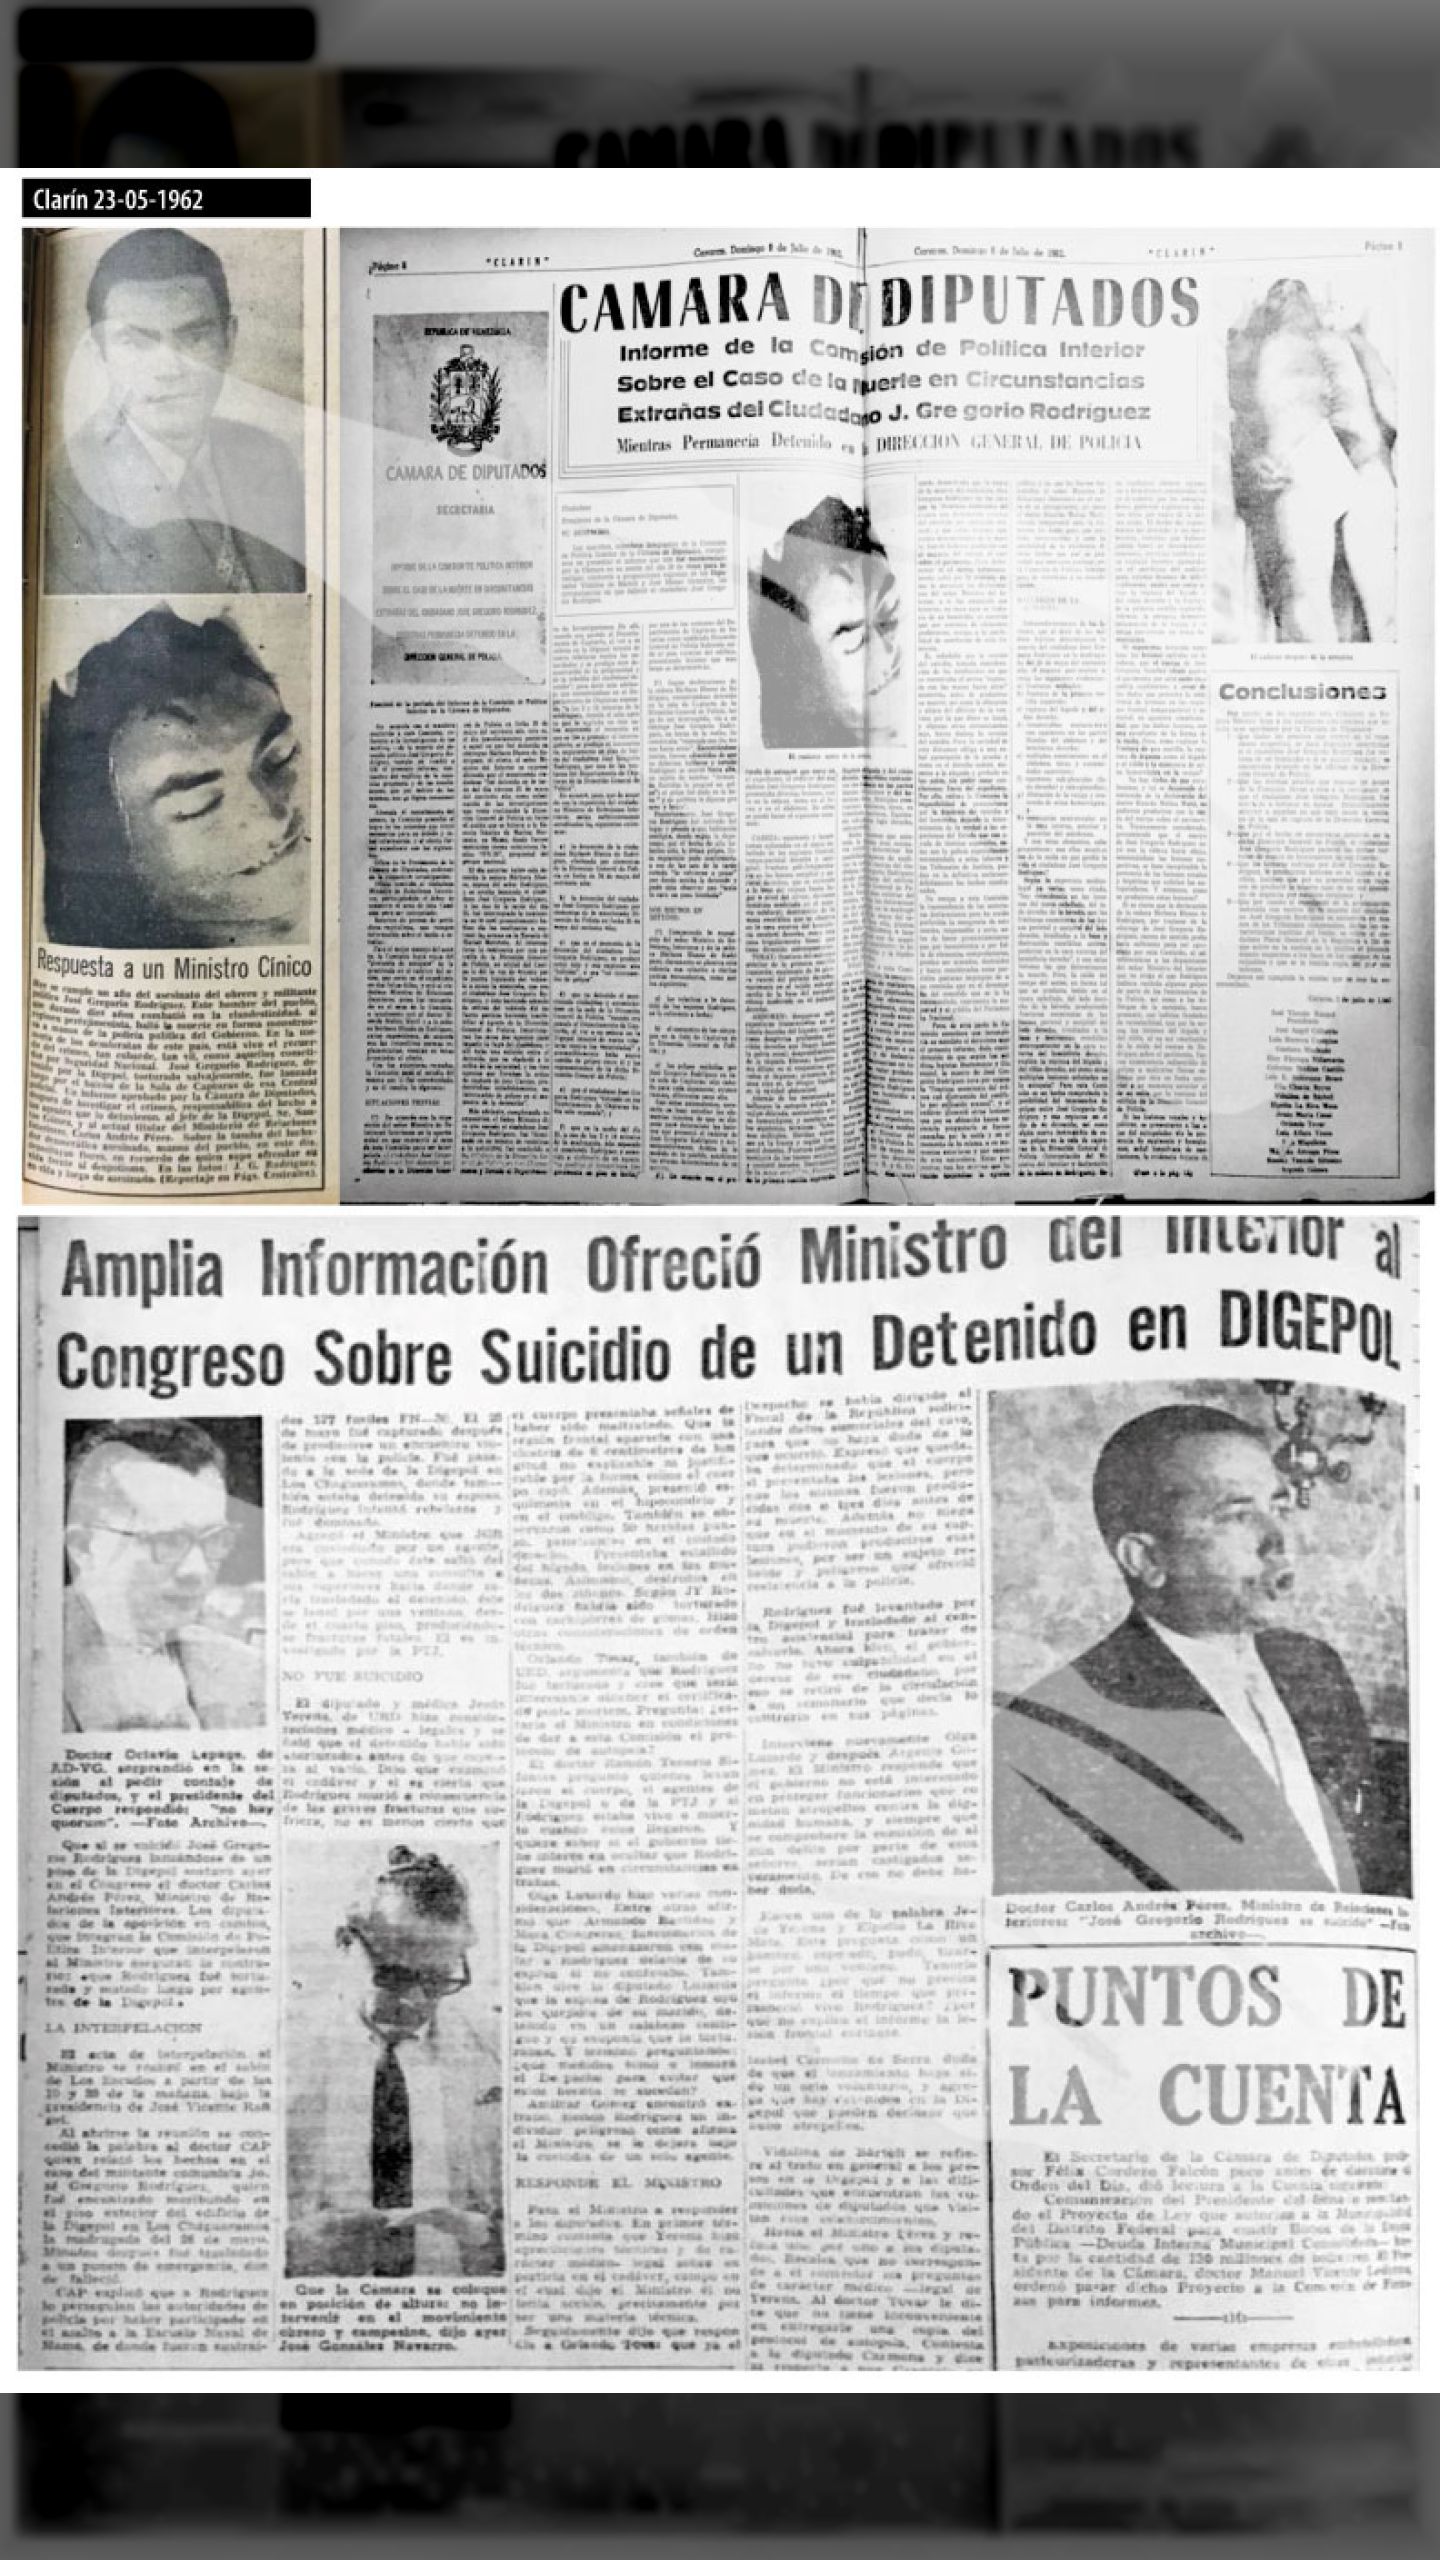 José Gregorio Rodríguez es “suicidado” en la Digepol (Últimas Noticias, 2 de junio de 1962)